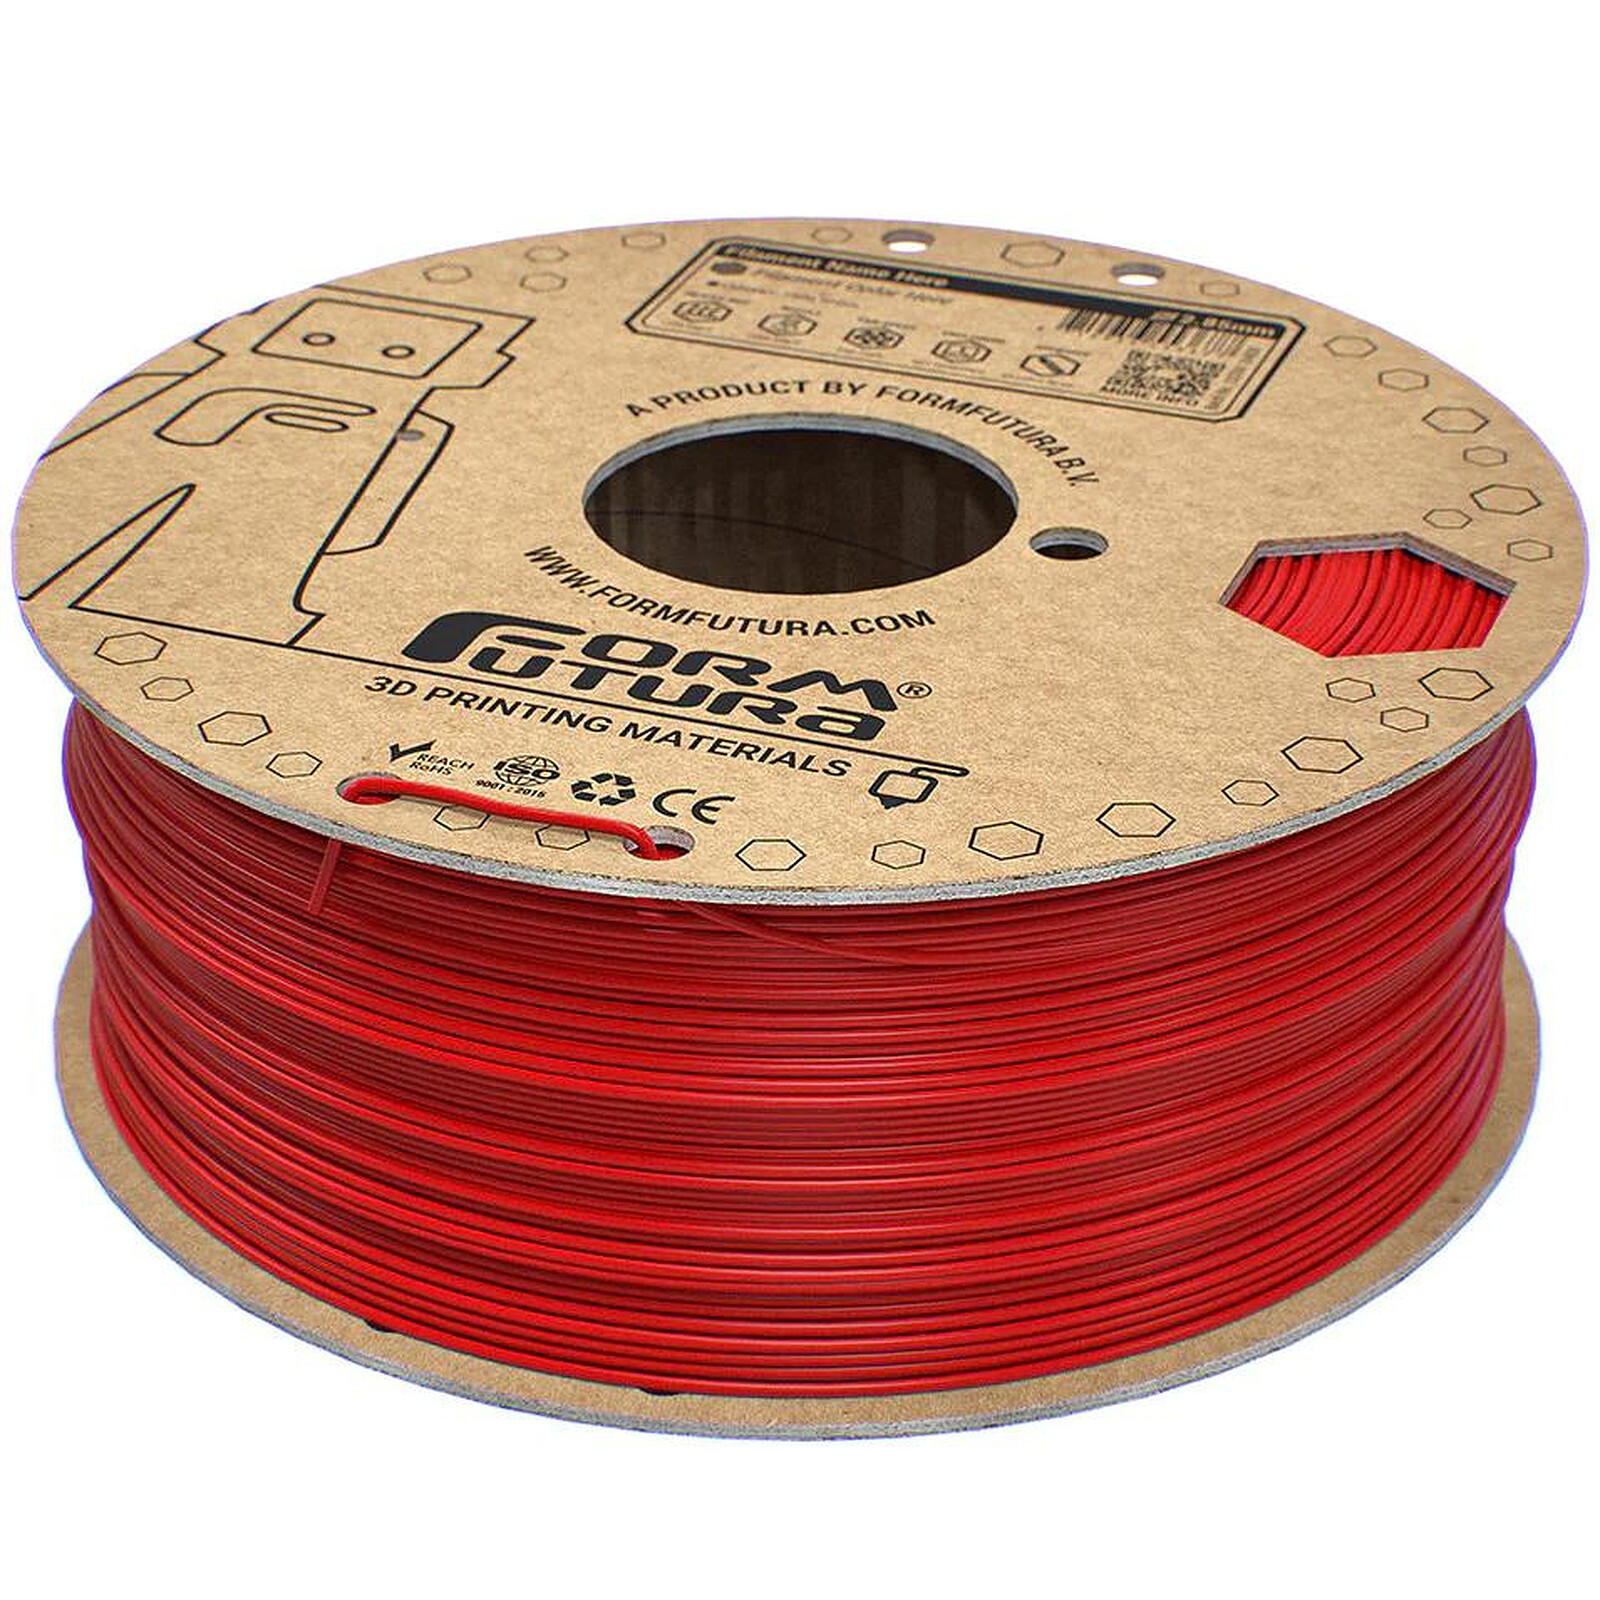 Chromatik - PLA Rouge Pompier 2300g - Filament 1.75mm - Filament 3D - LDLC